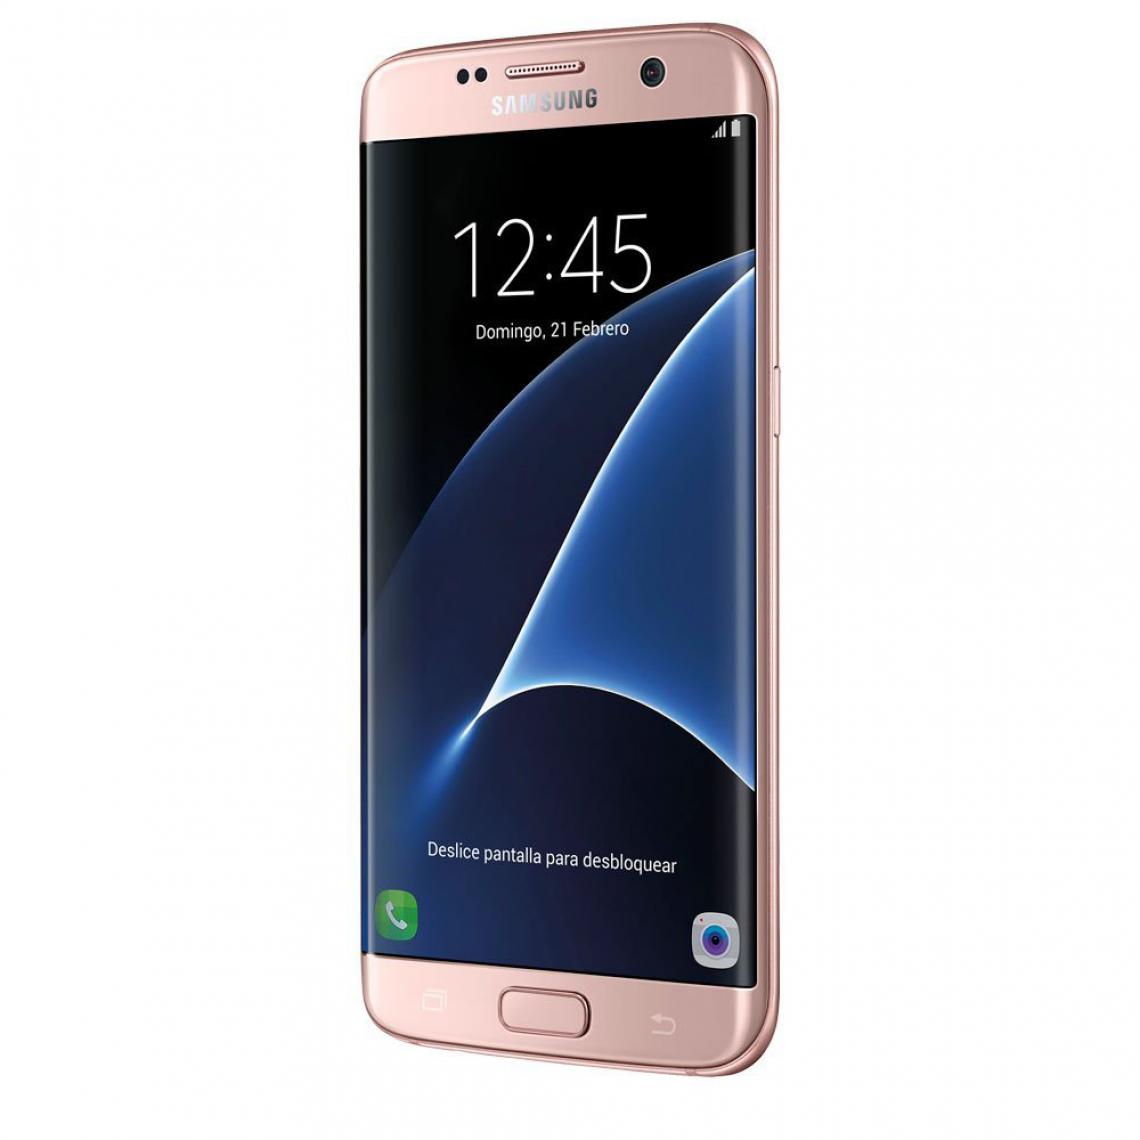 Samsung - Galaxy S7 edge SM-G935F SIM unique 4G 32Go Rose doré - Smartphone Android